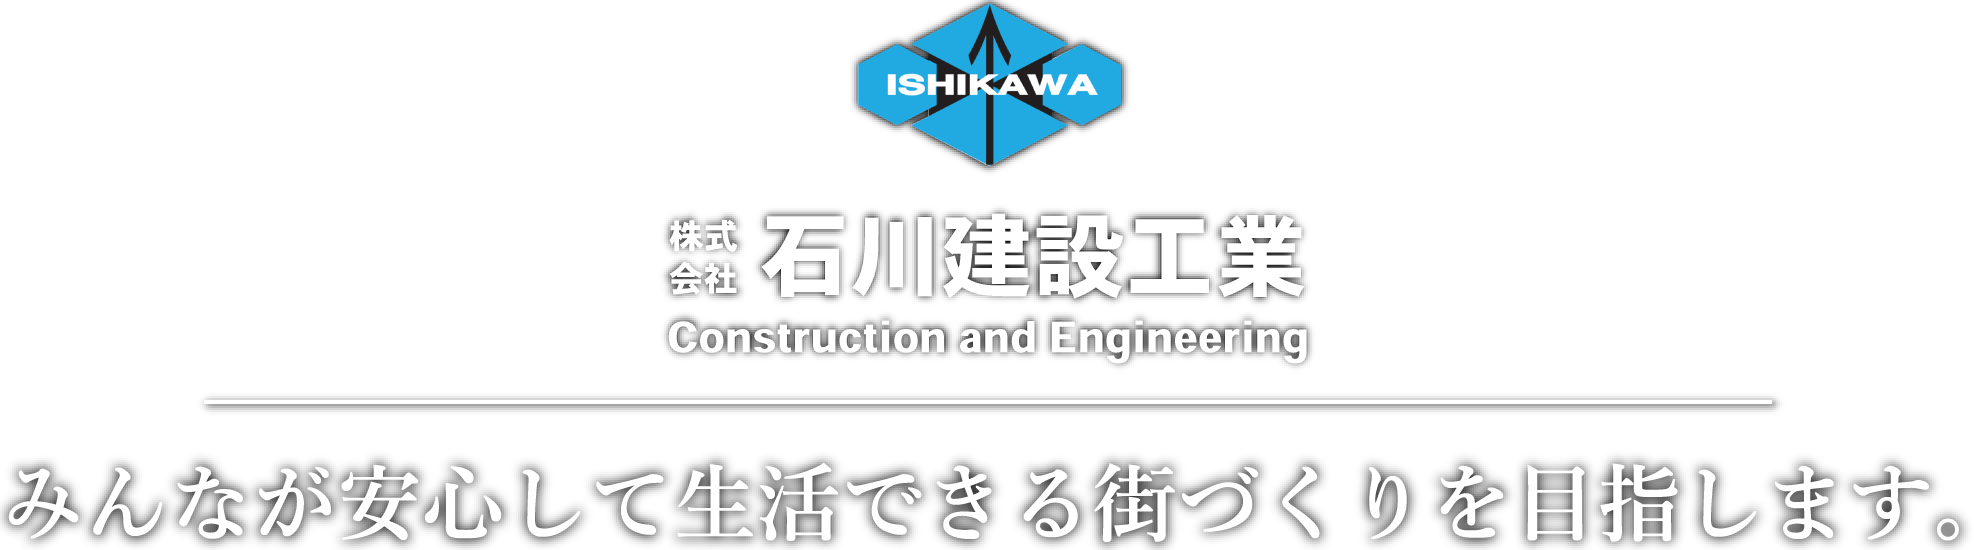 株式会社石川建設工業 みんなが安心してできる街づくりを目指します。